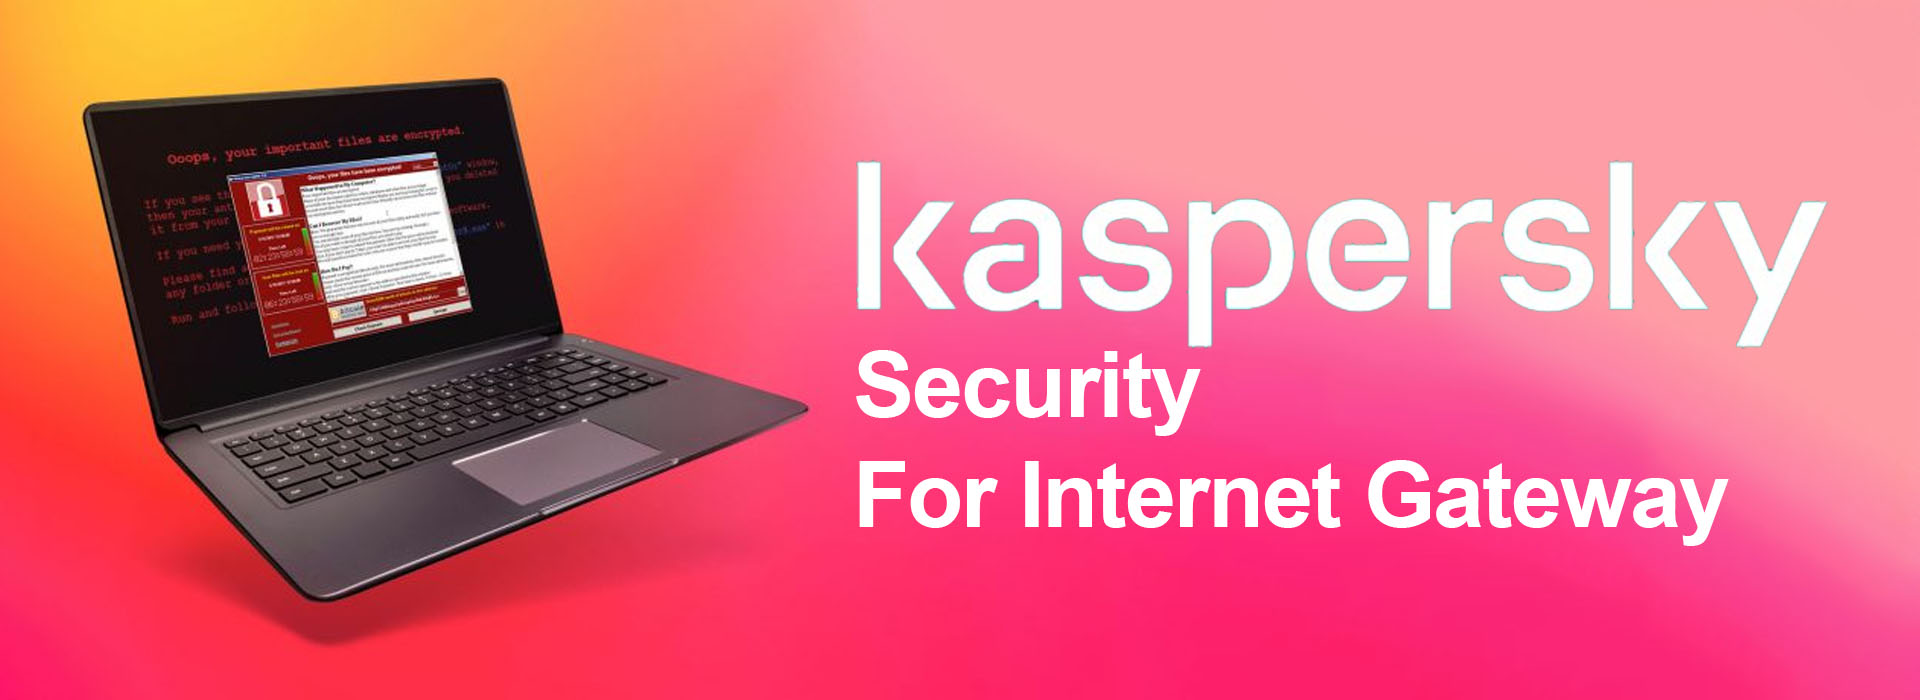 Truy cập mạng an toàn với Kaspersky Security for Internet Gateway - Bảo mật cổng Internet toàn diện dành cho doanh nghiệp